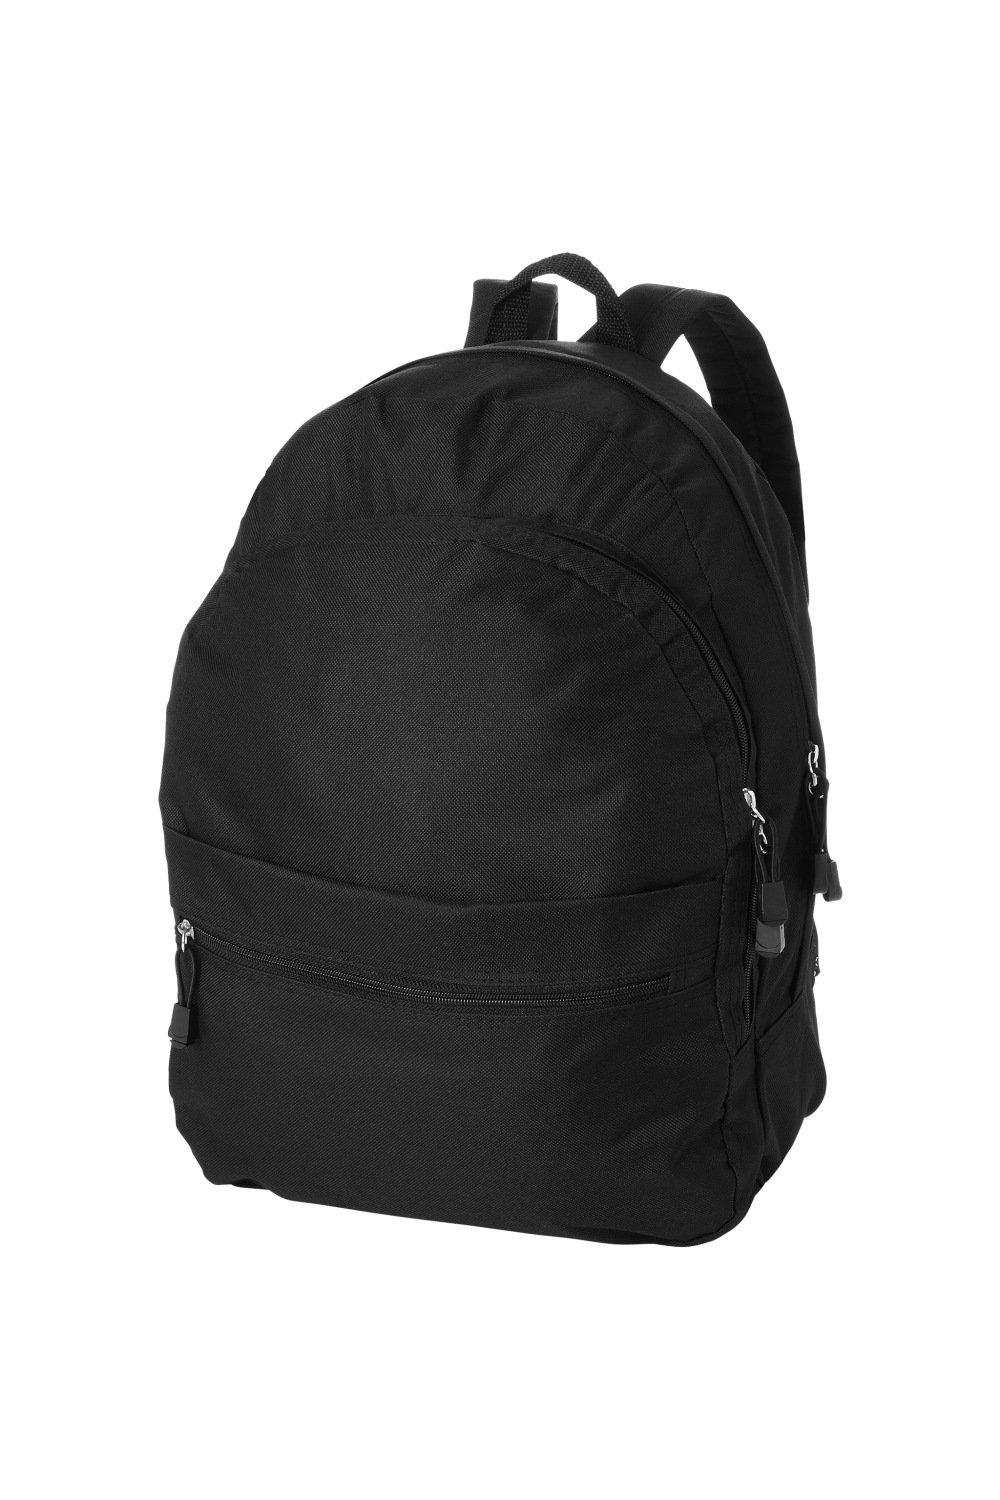 Трендовый рюкзак Bullet, черный рюкзак с карманом единорог